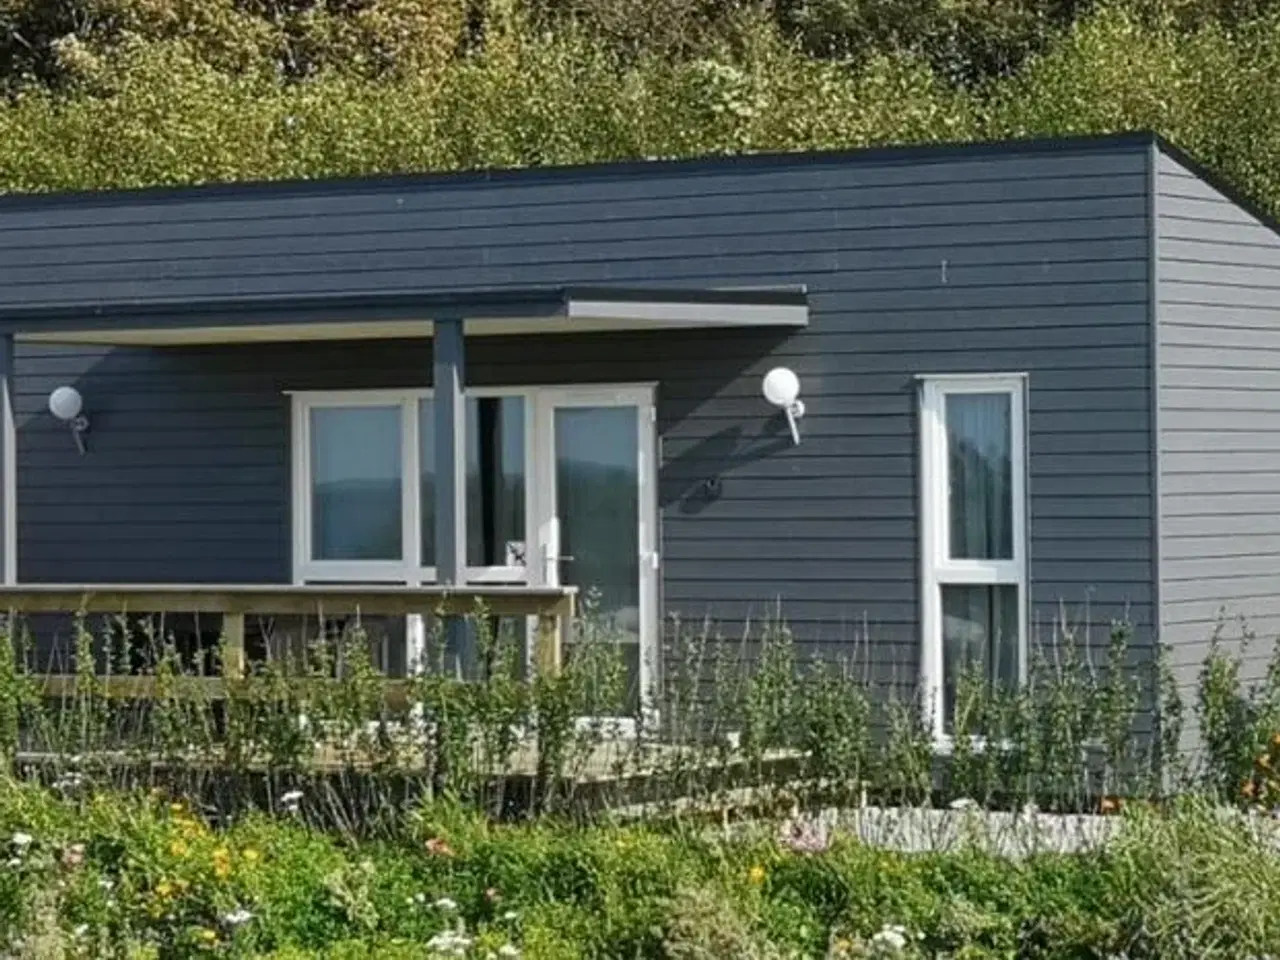 Billede 1 - Nye feriehuse ved Limfjorden nær Aalborg - Opvarmet minivandland, legeplads, cafe, gratis WIFi, åbent hele året, i hjertet af Nordjylland.